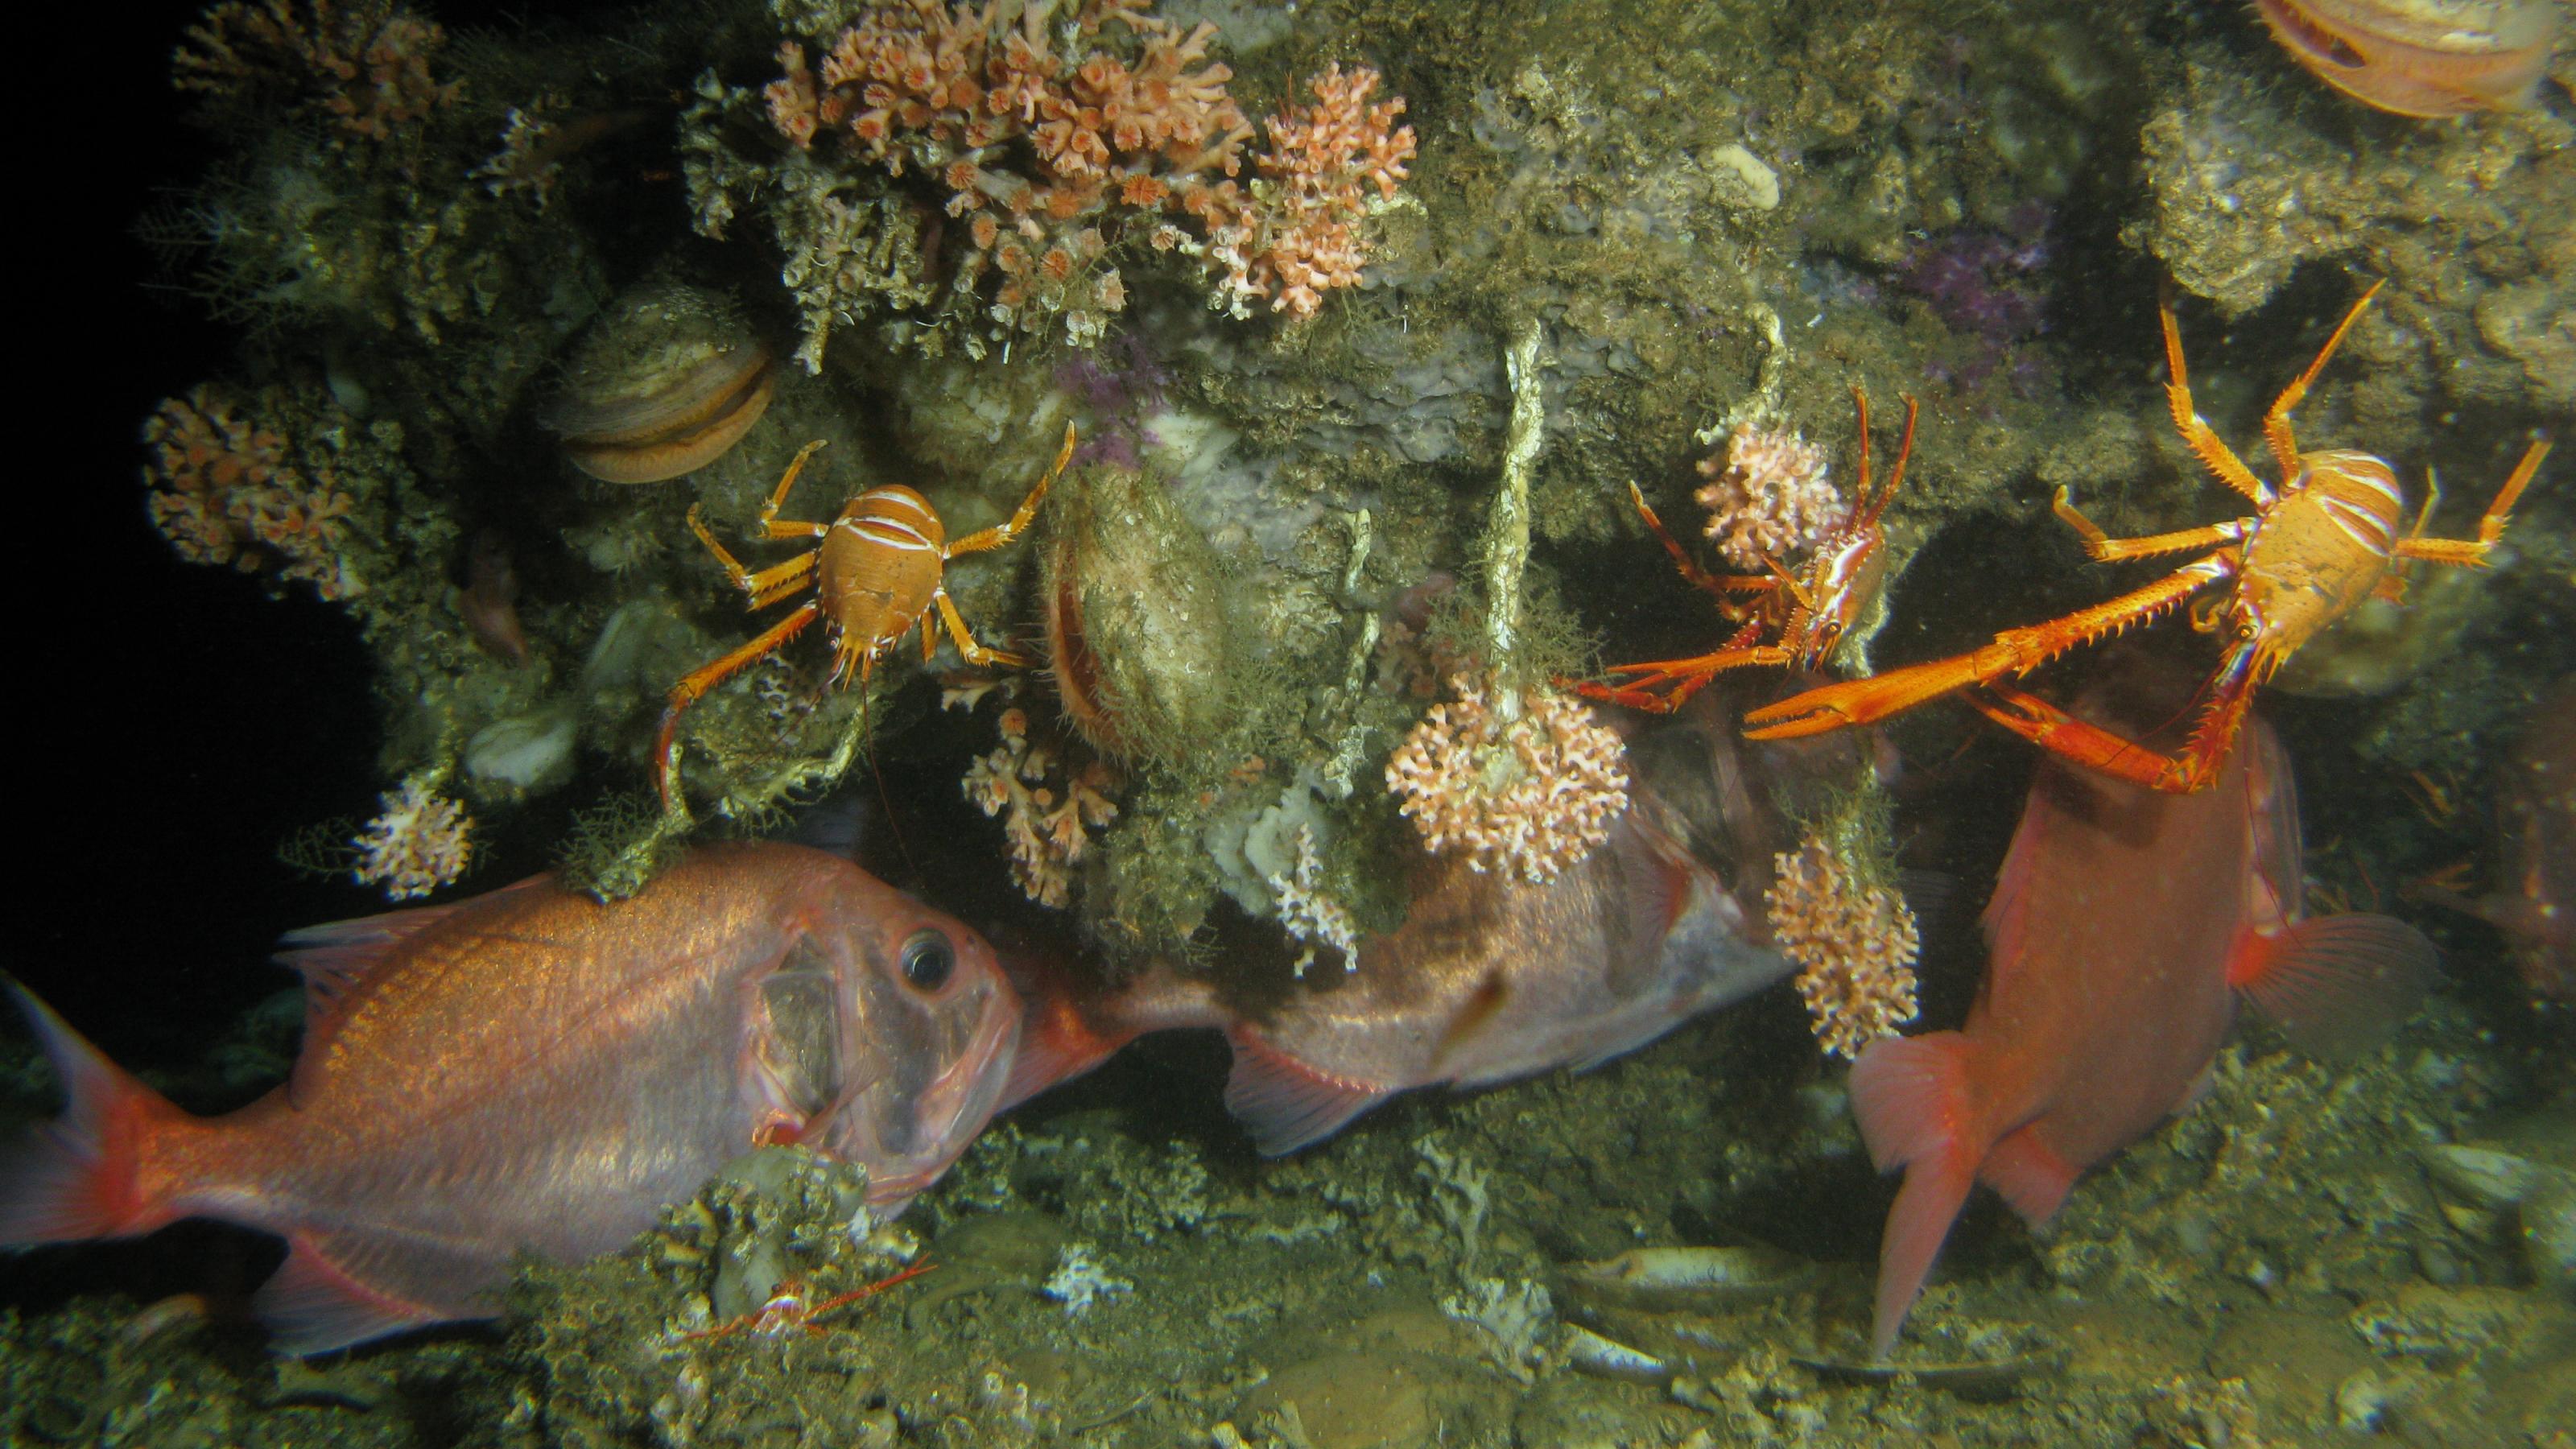 In einem dunklen Korallenriff verstecken sich rötliche Fische, von Muscheln sind leicht geöffnete Schalen zuerkennen. Im Vordergrund schwimmen orange Krabben mit langen Beinen und weißen Streifen auf dem Körper. Einige Korallen stehen auf einer felsigen Struktur, anderen hängen an kordelförmigen Röhren nach unten.korallen stehen auf einerdem Körper